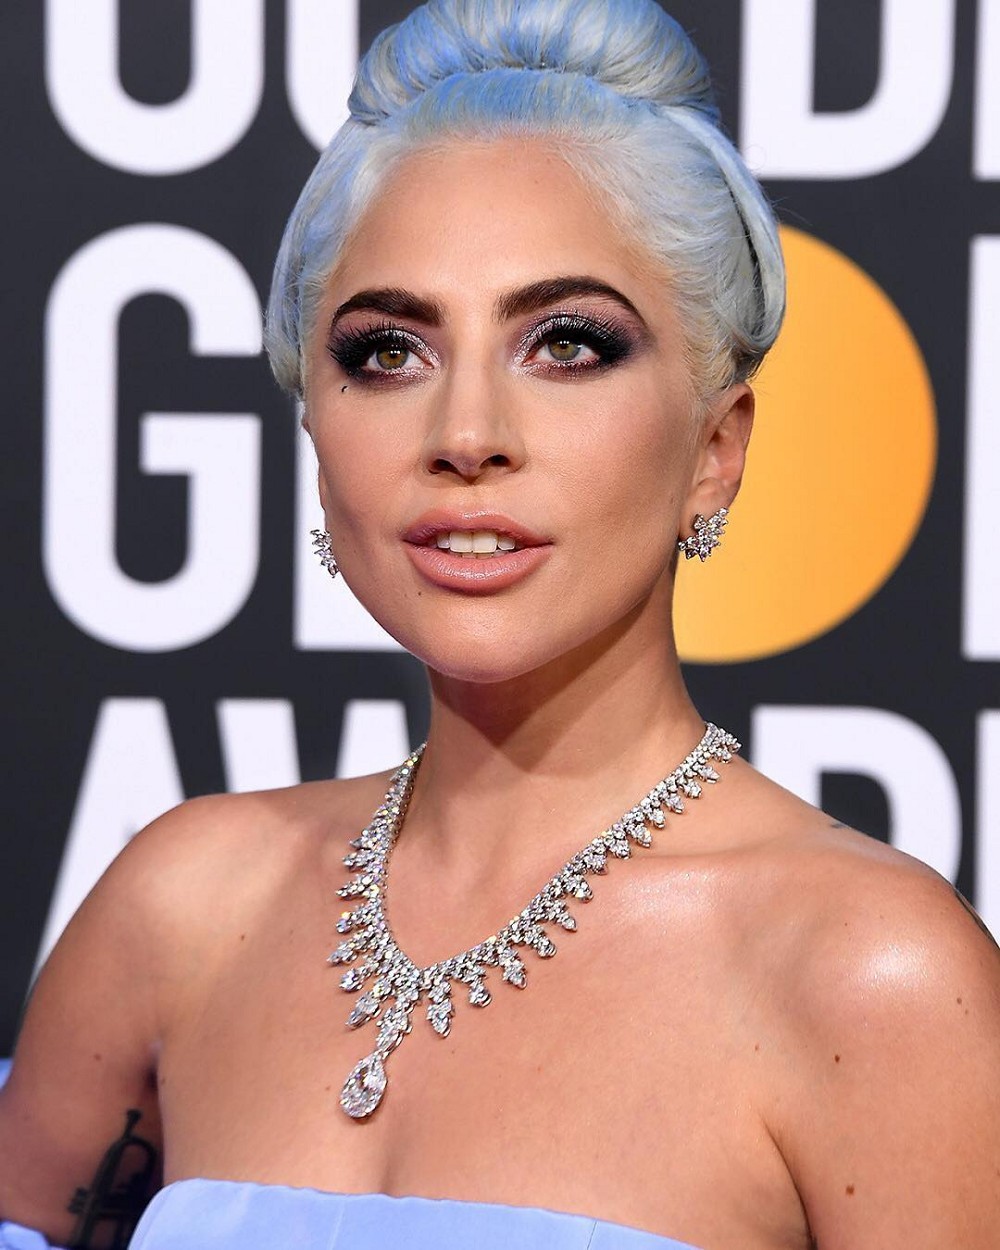 『珠宝』Lady Gaga 佩戴一条 Tiffany 钻石项链出席金球奖